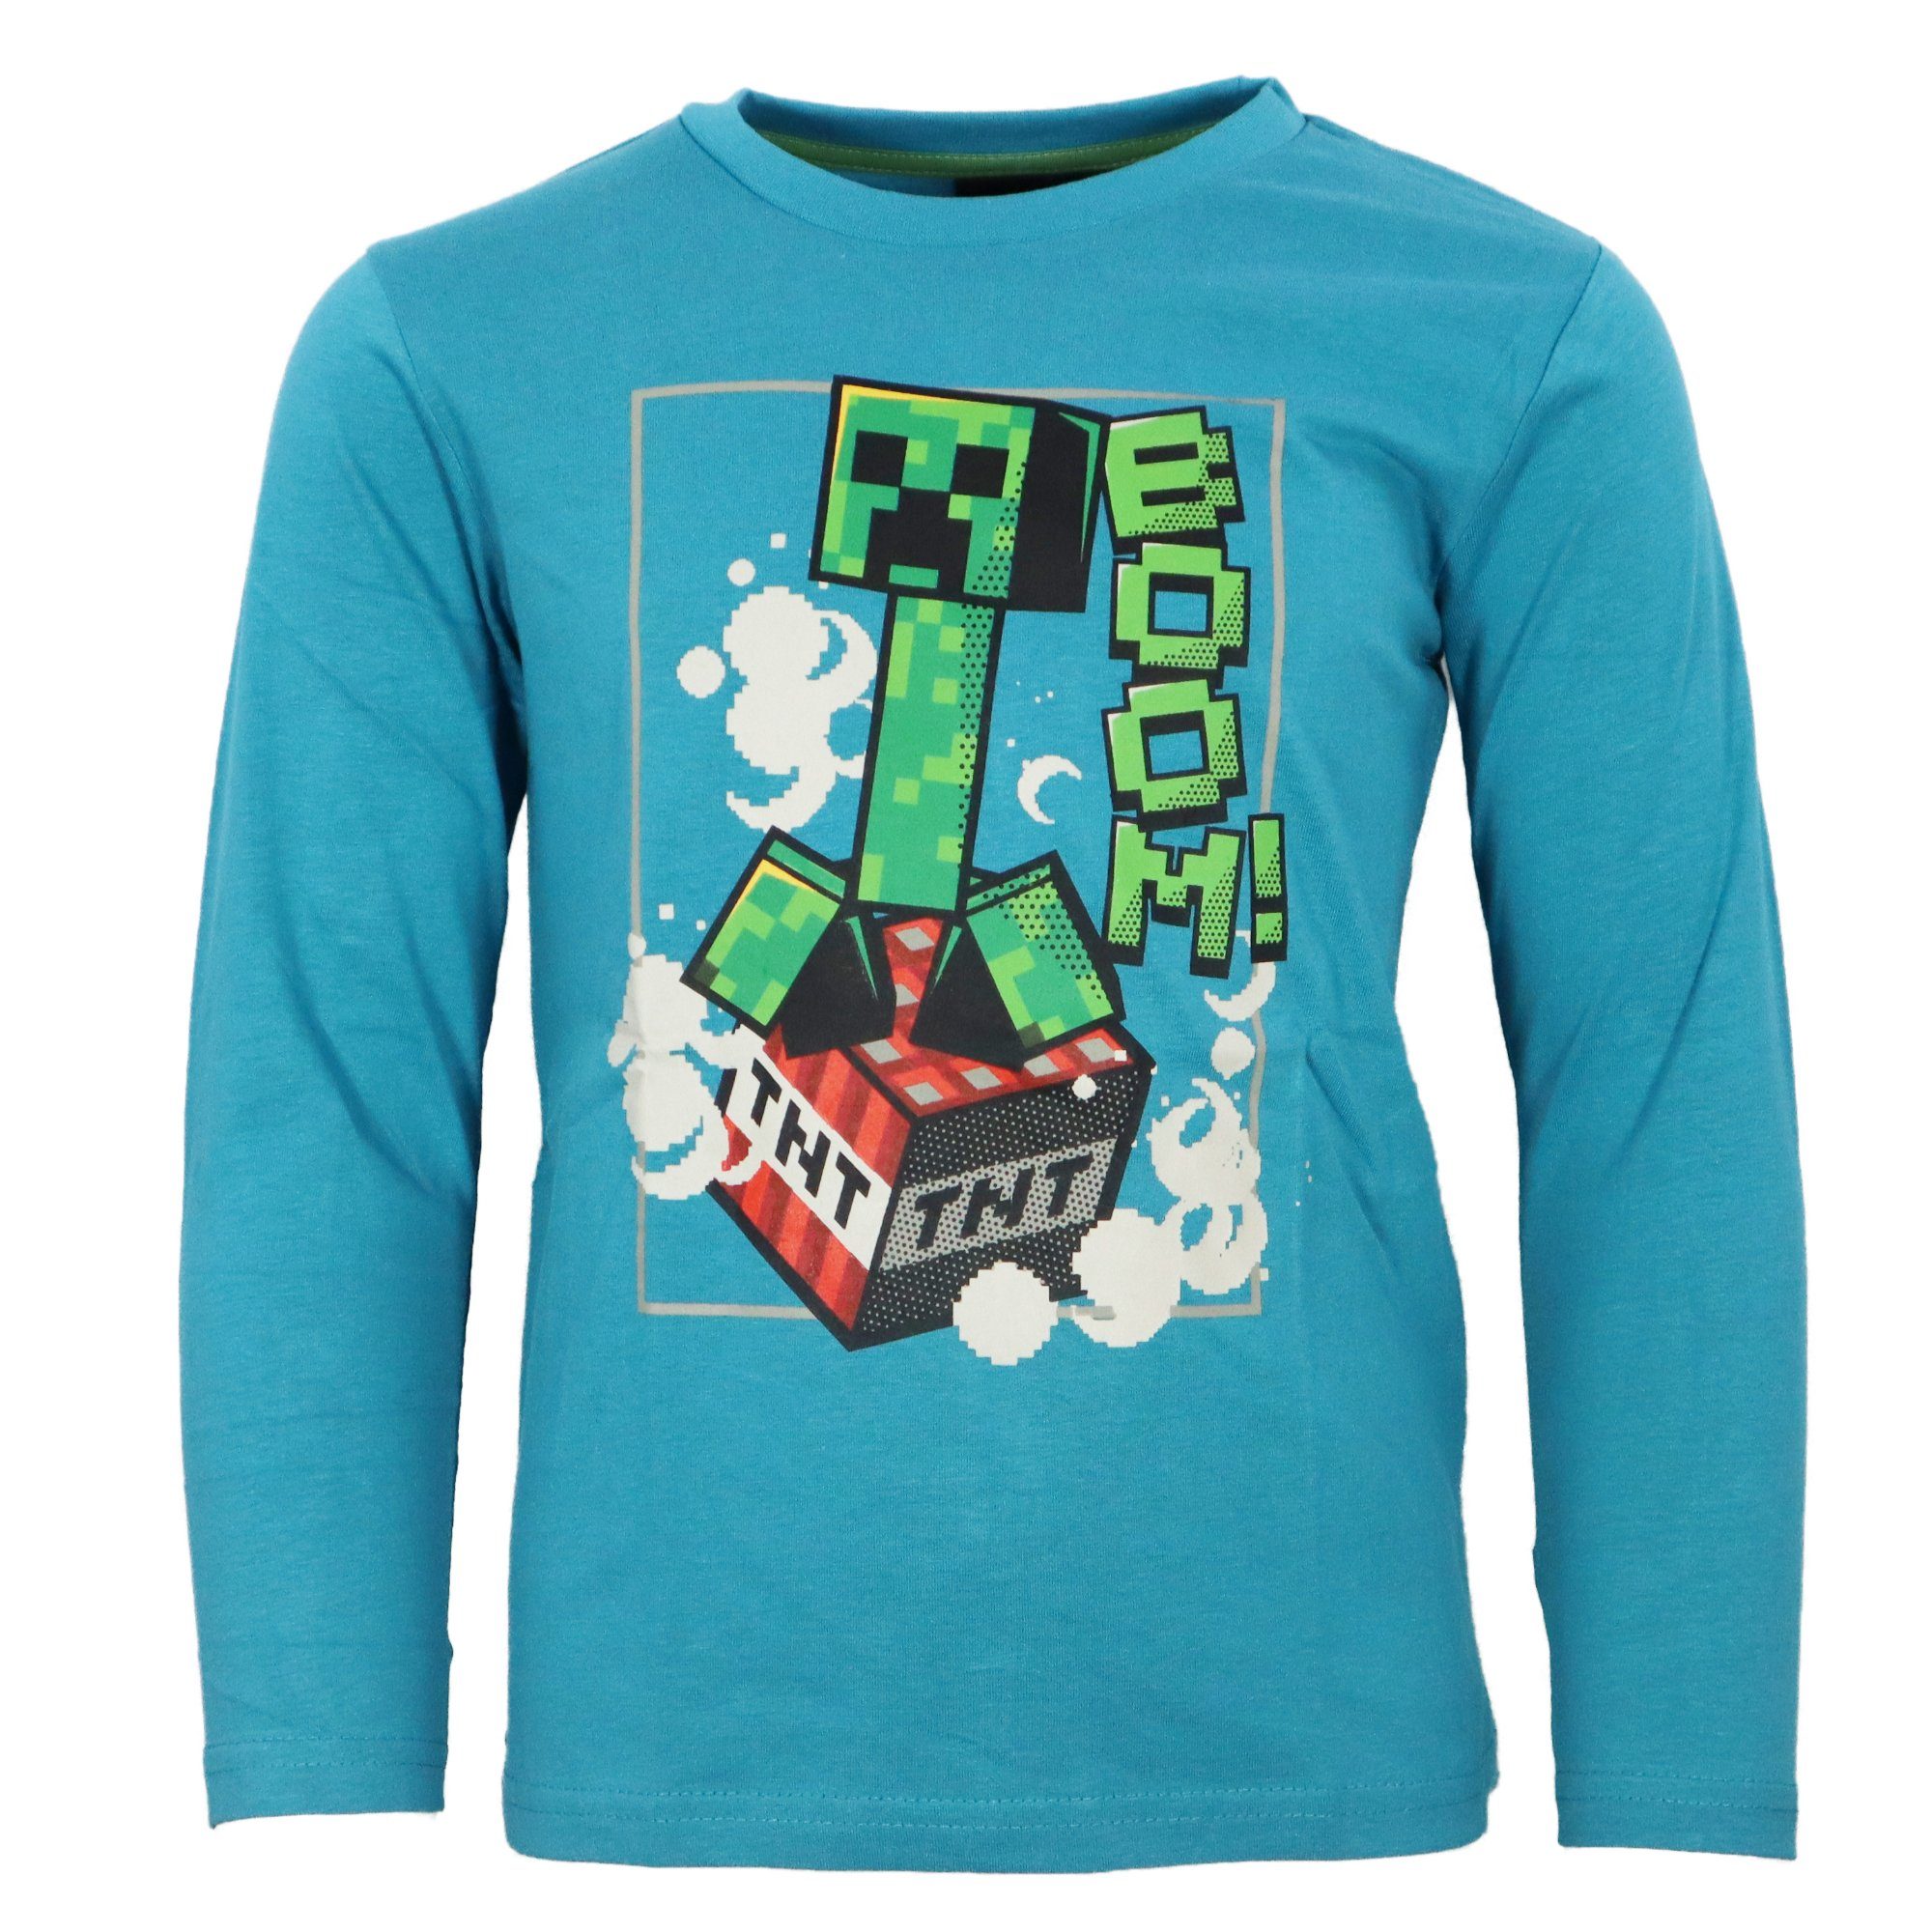 Minecraft Langarmshirt Minecraft Creeper Langarm Shirt Jungen bis Kinder 116 100% Baumwolle Gamer 152, Gr